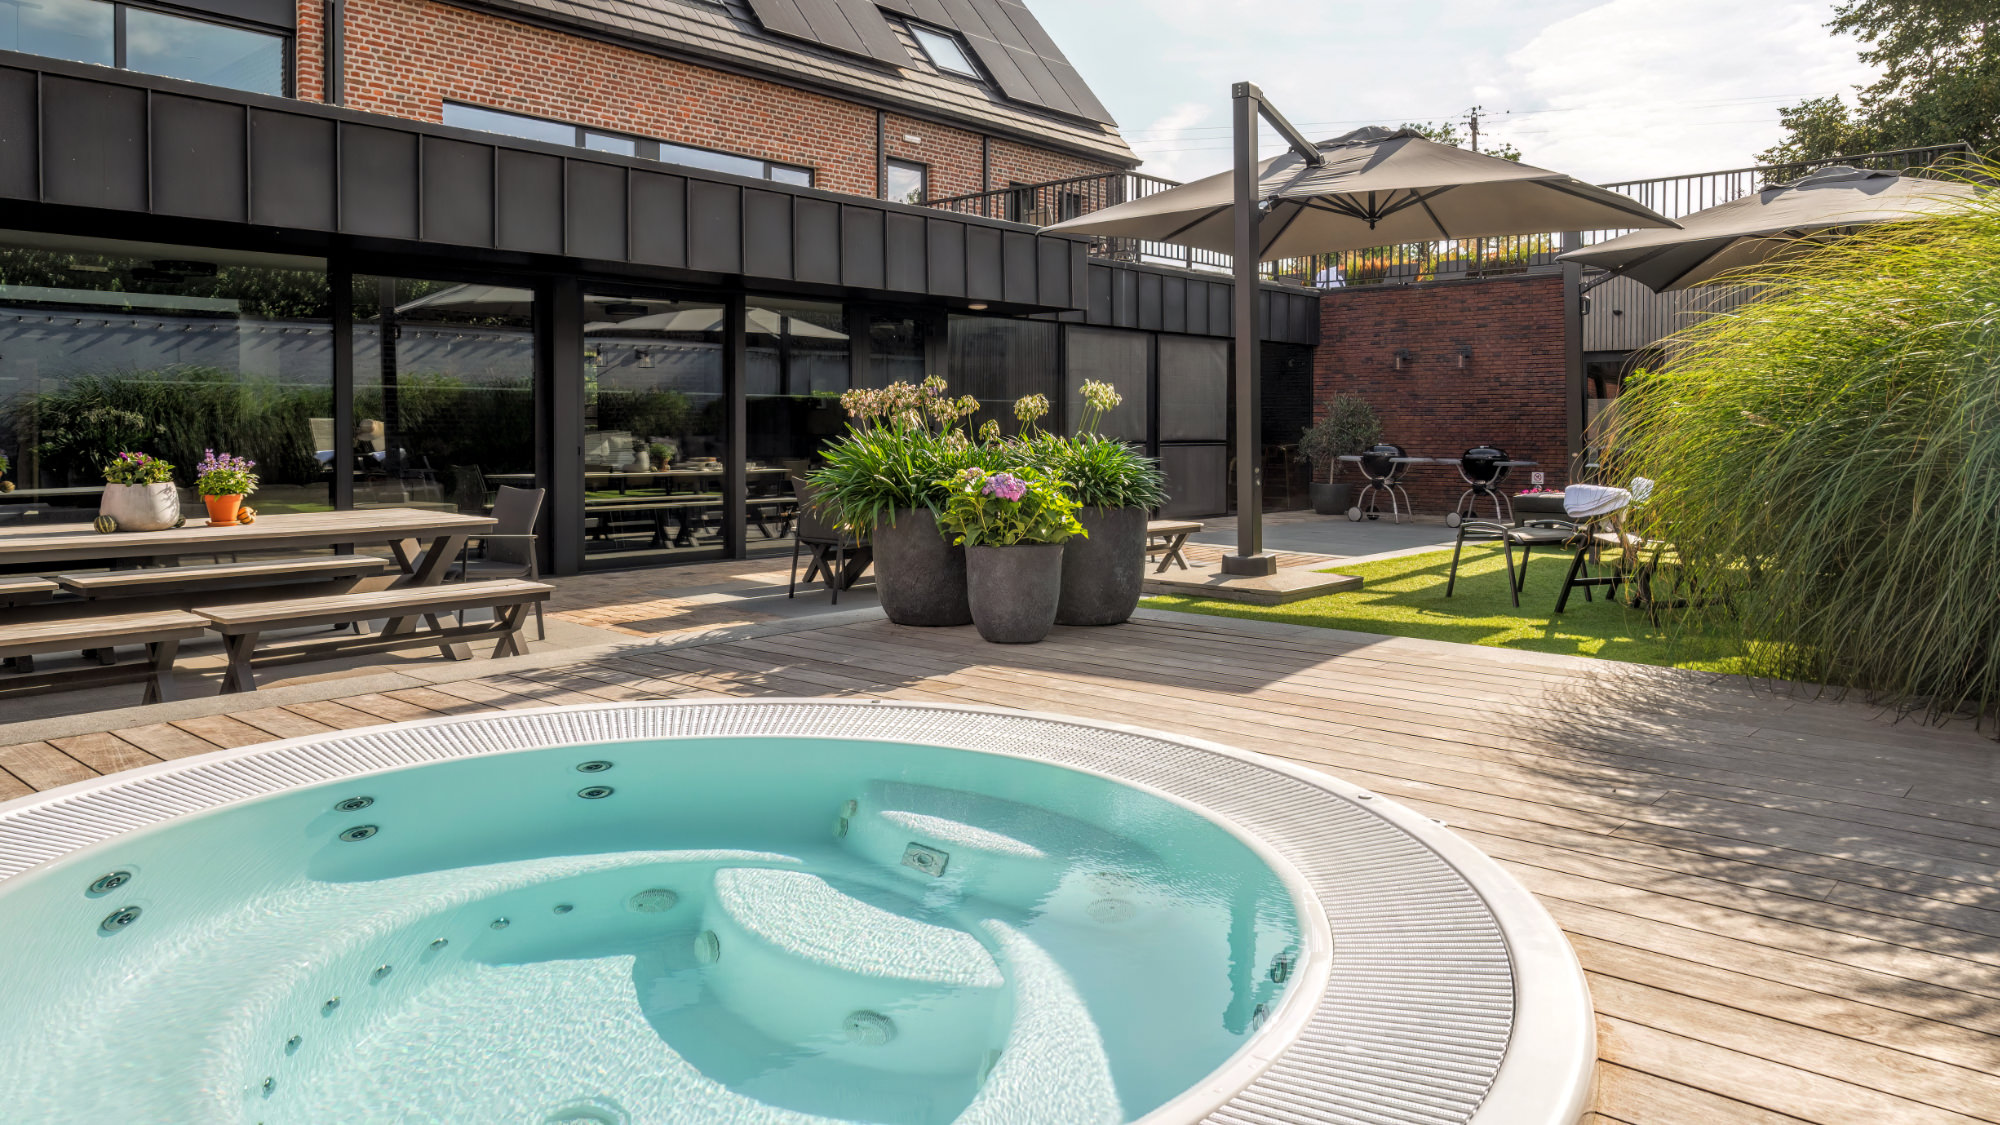 Foto vom Ferienhaus Belvoor mit Pool im Garten ansehen.